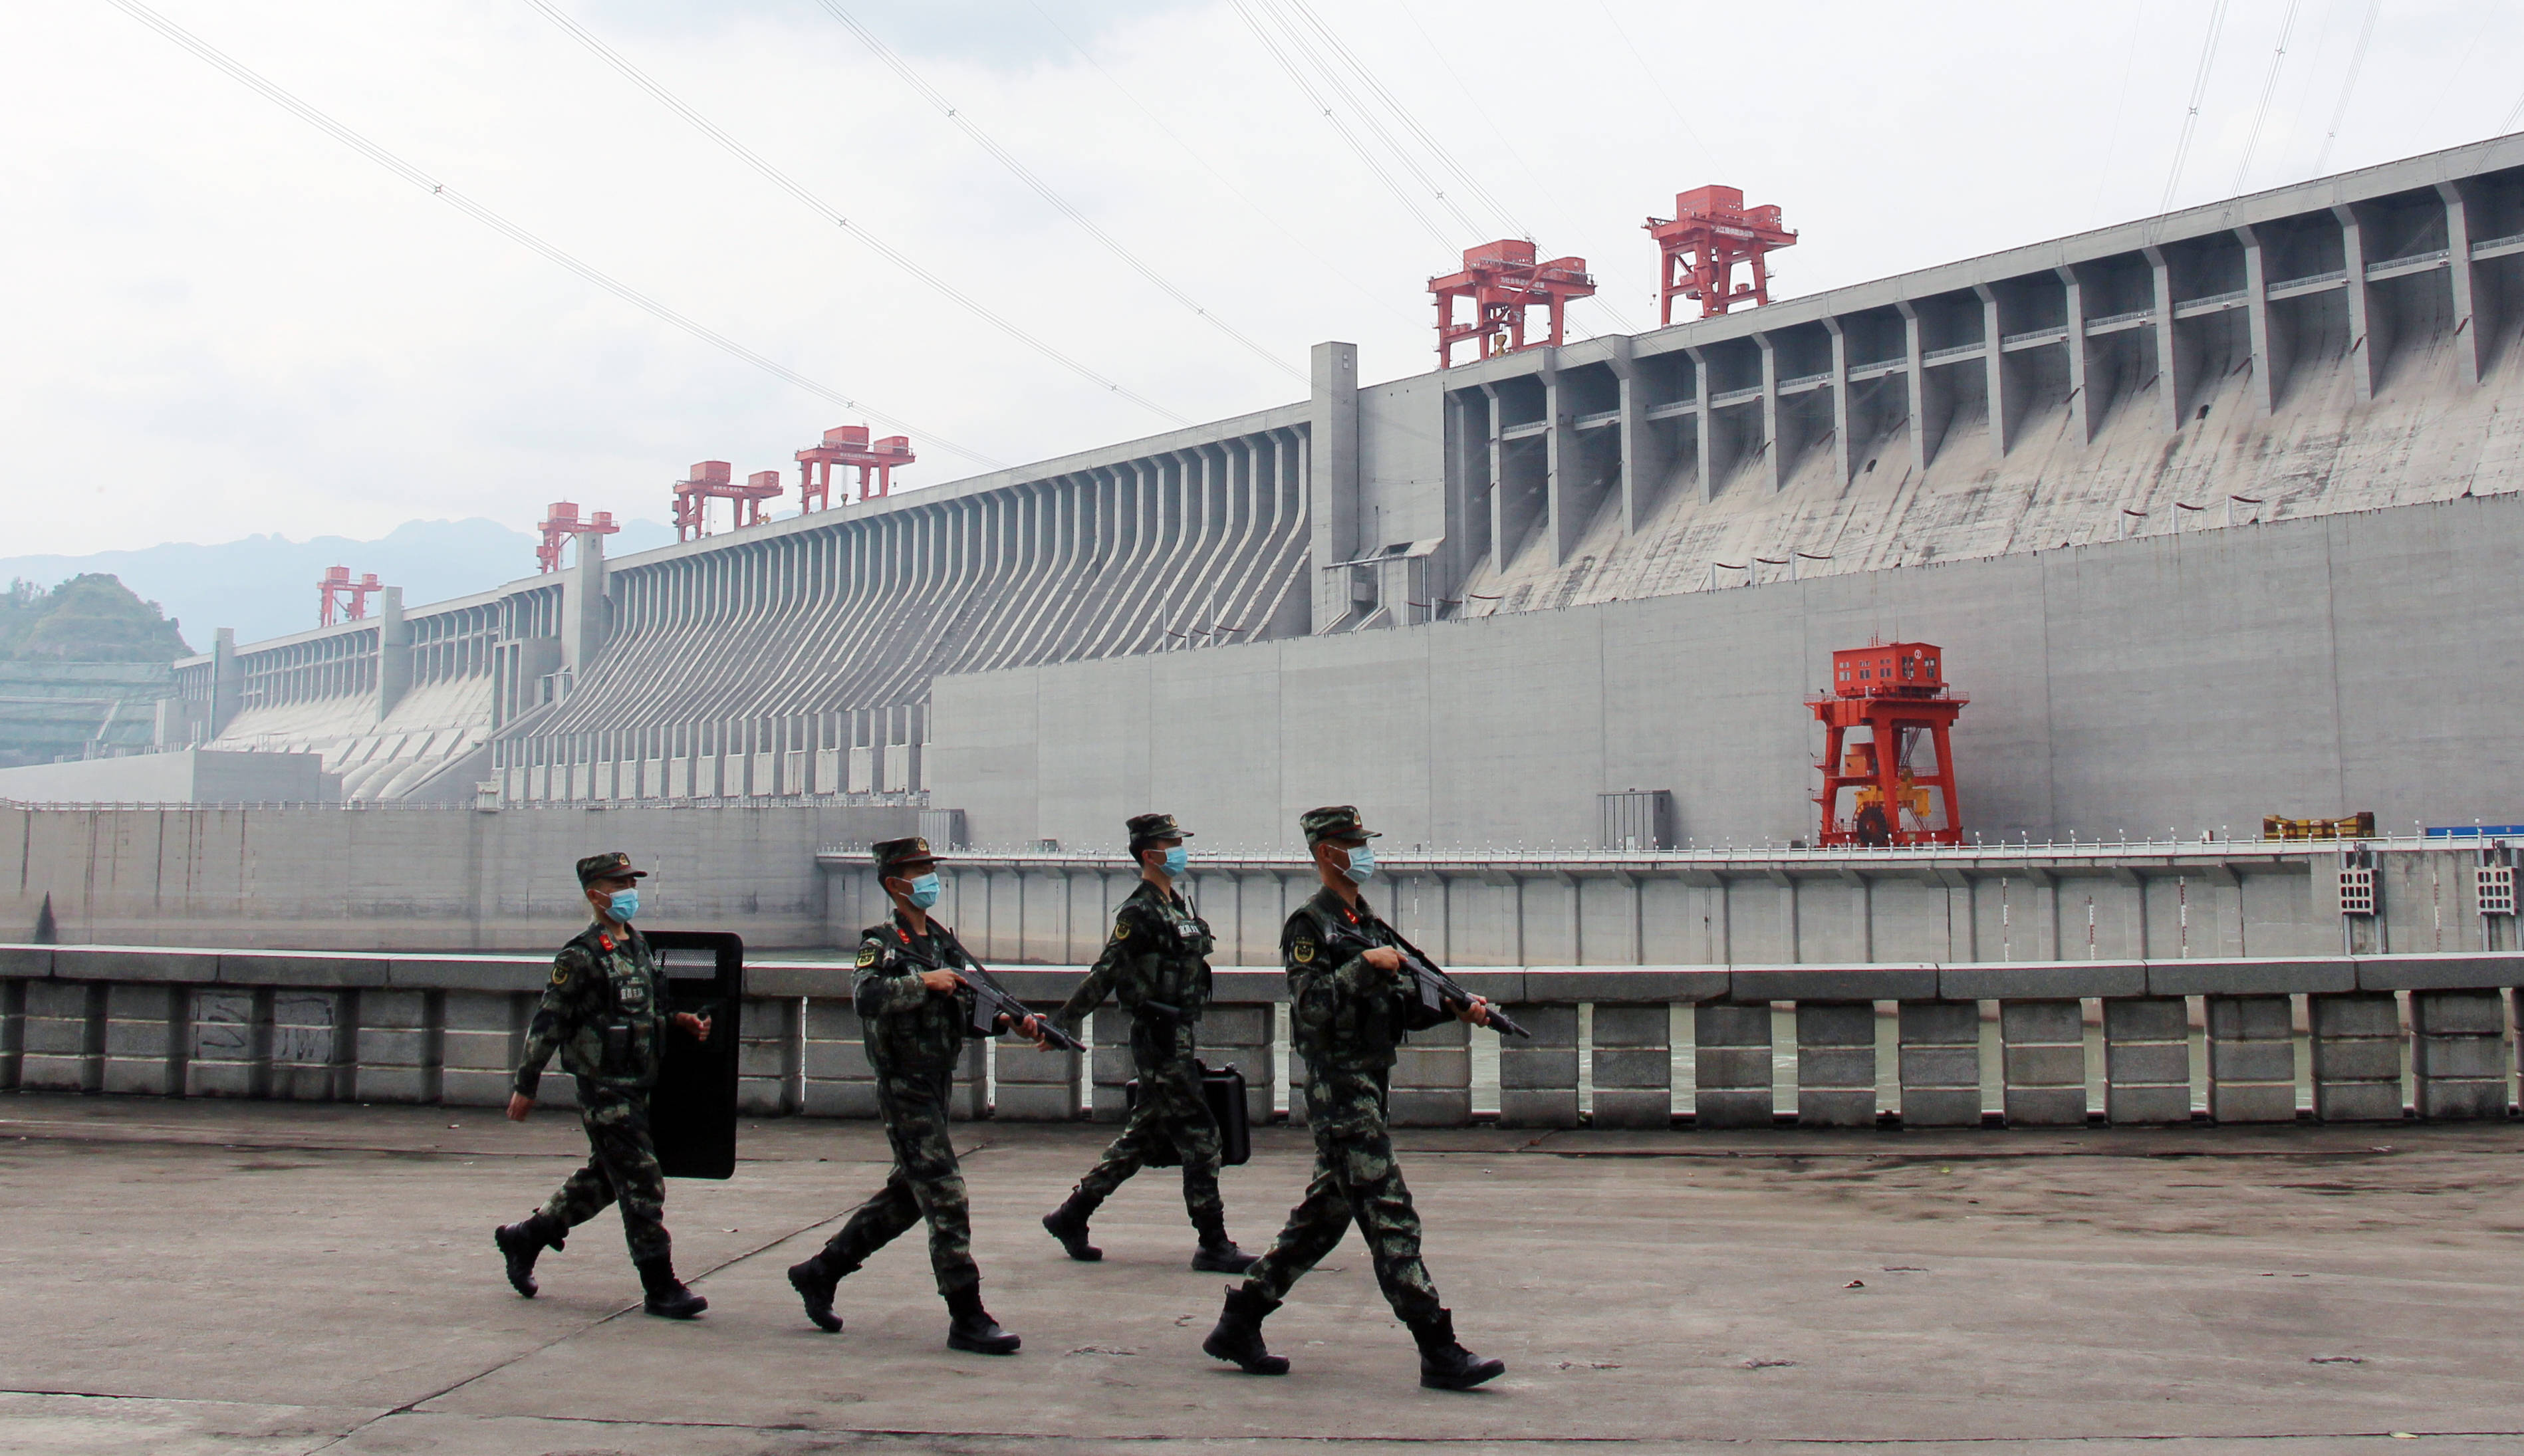 9月30日,武警湖北总队宜昌支队机动大队官兵在三峡大坝执勤巡逻